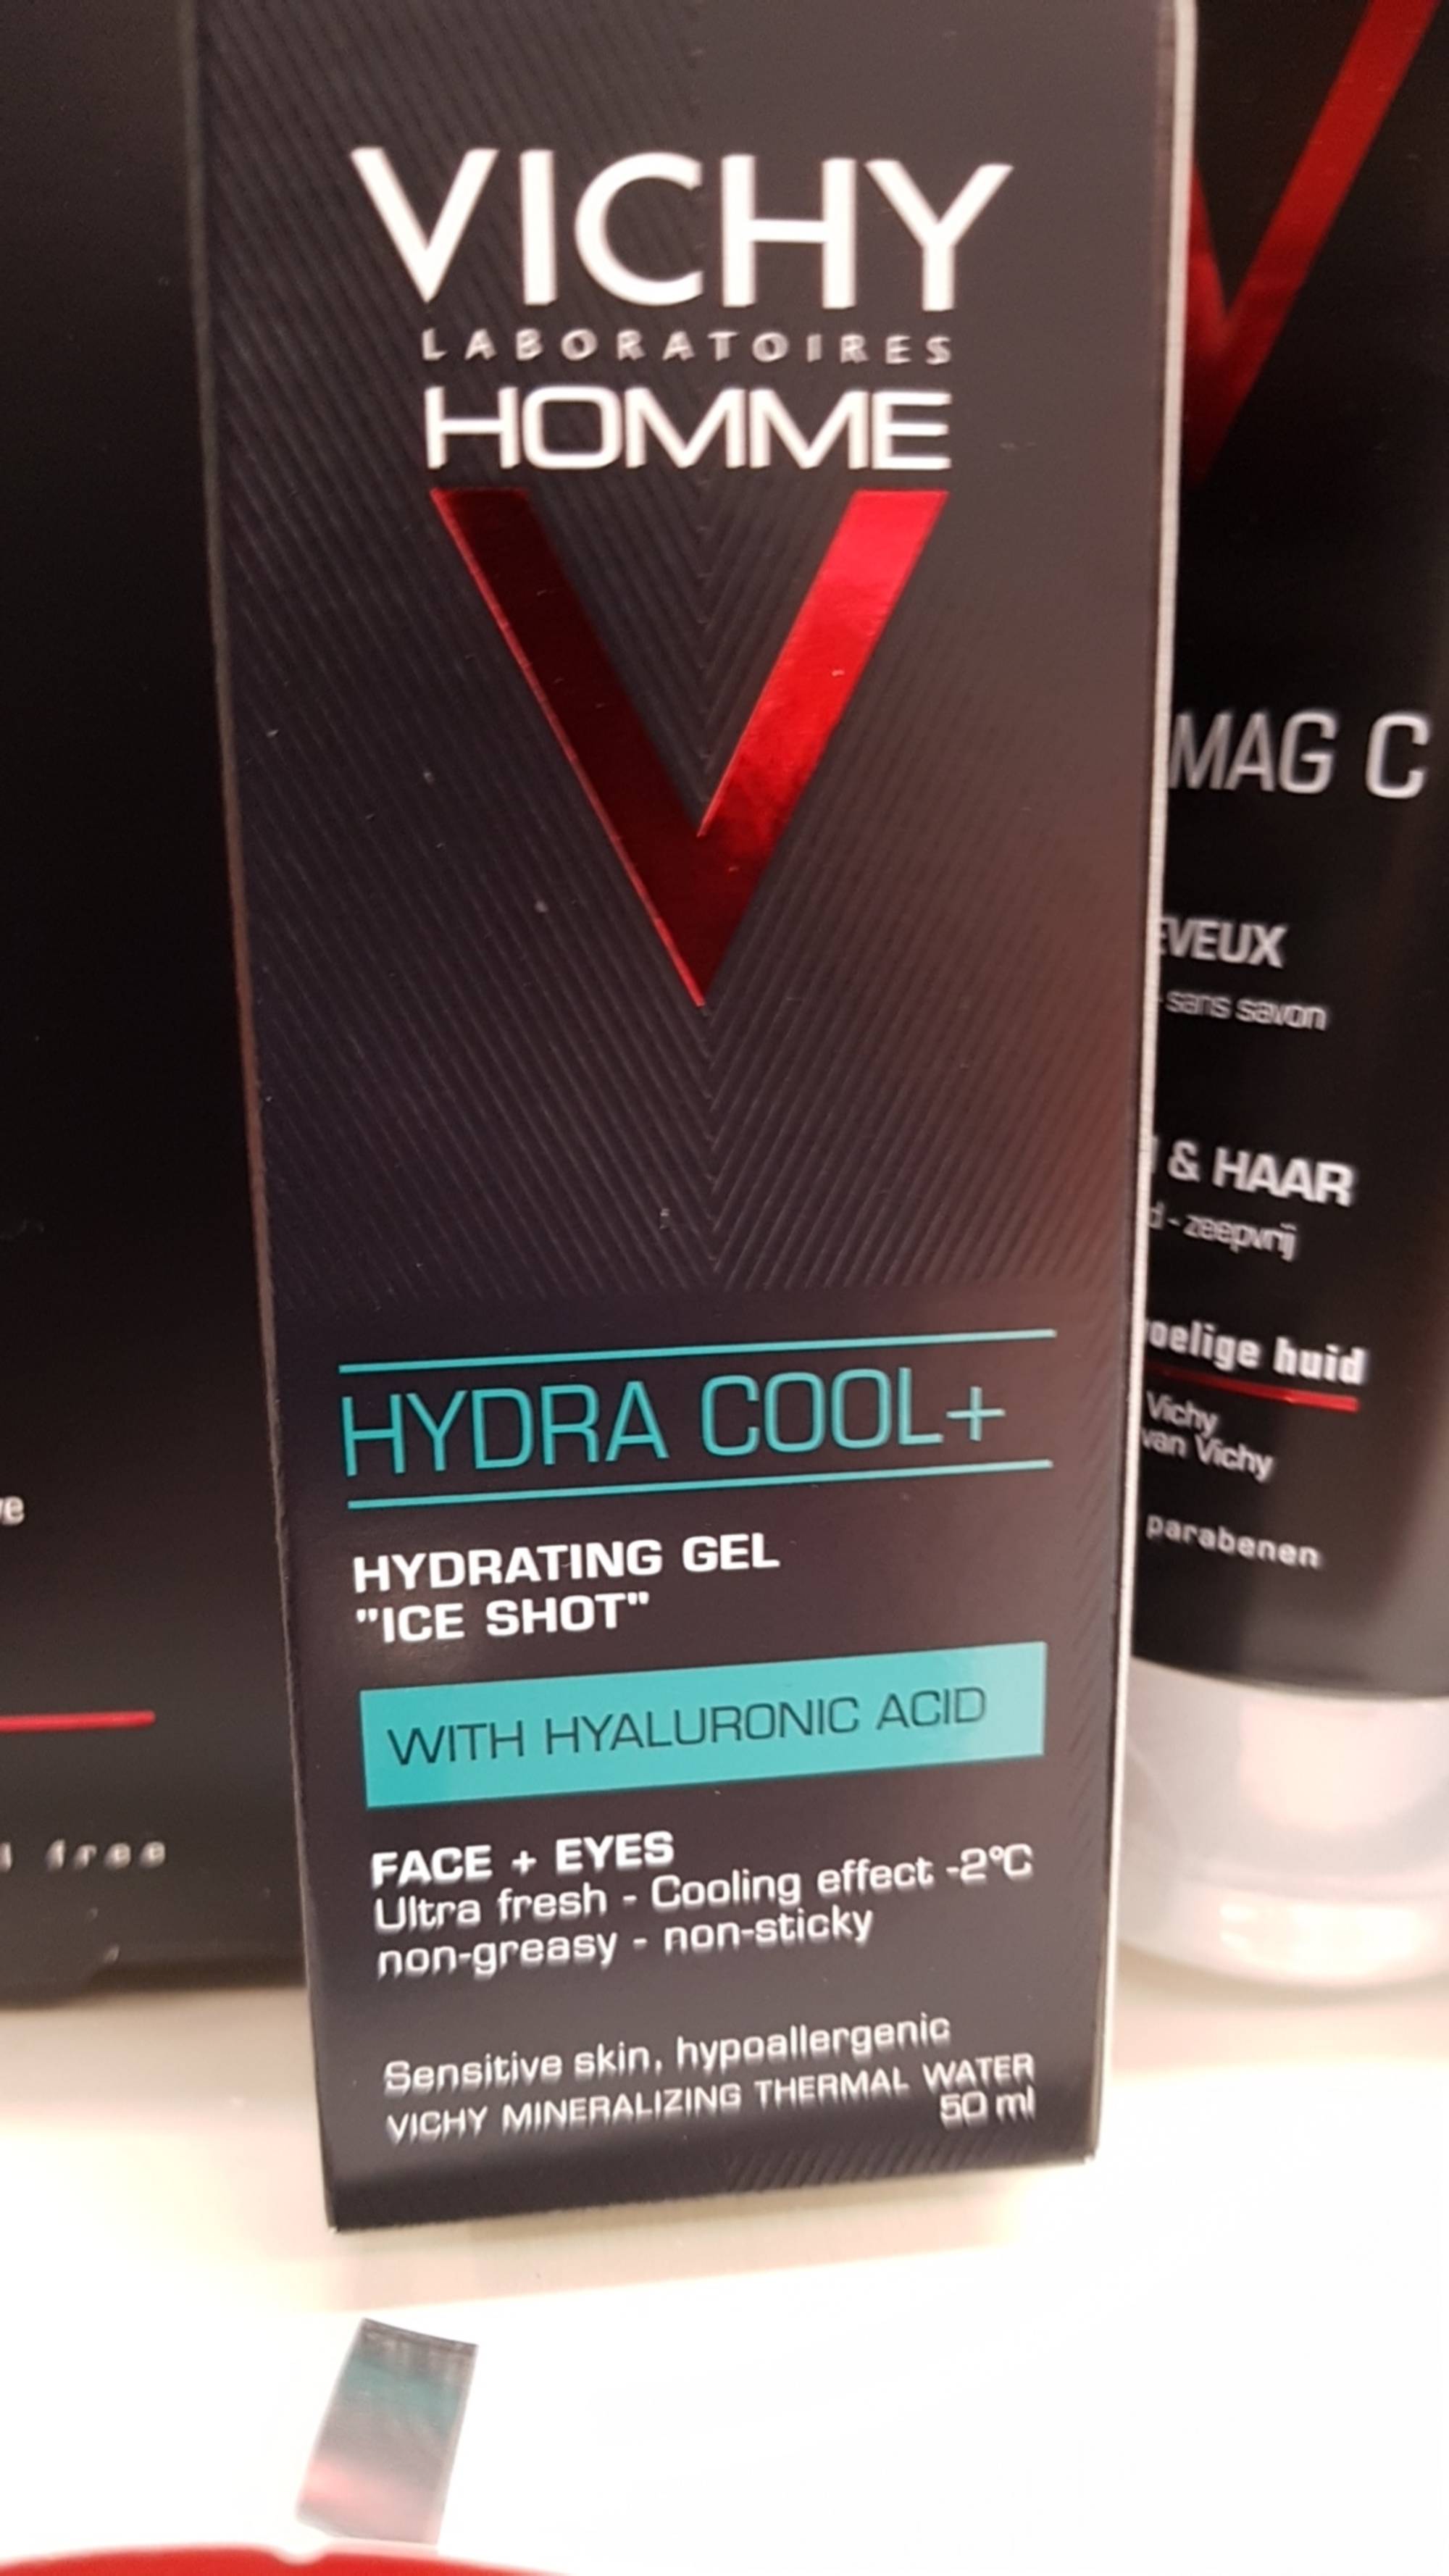 VICHY - Homme - Hydra cool+ - Hydrating gel